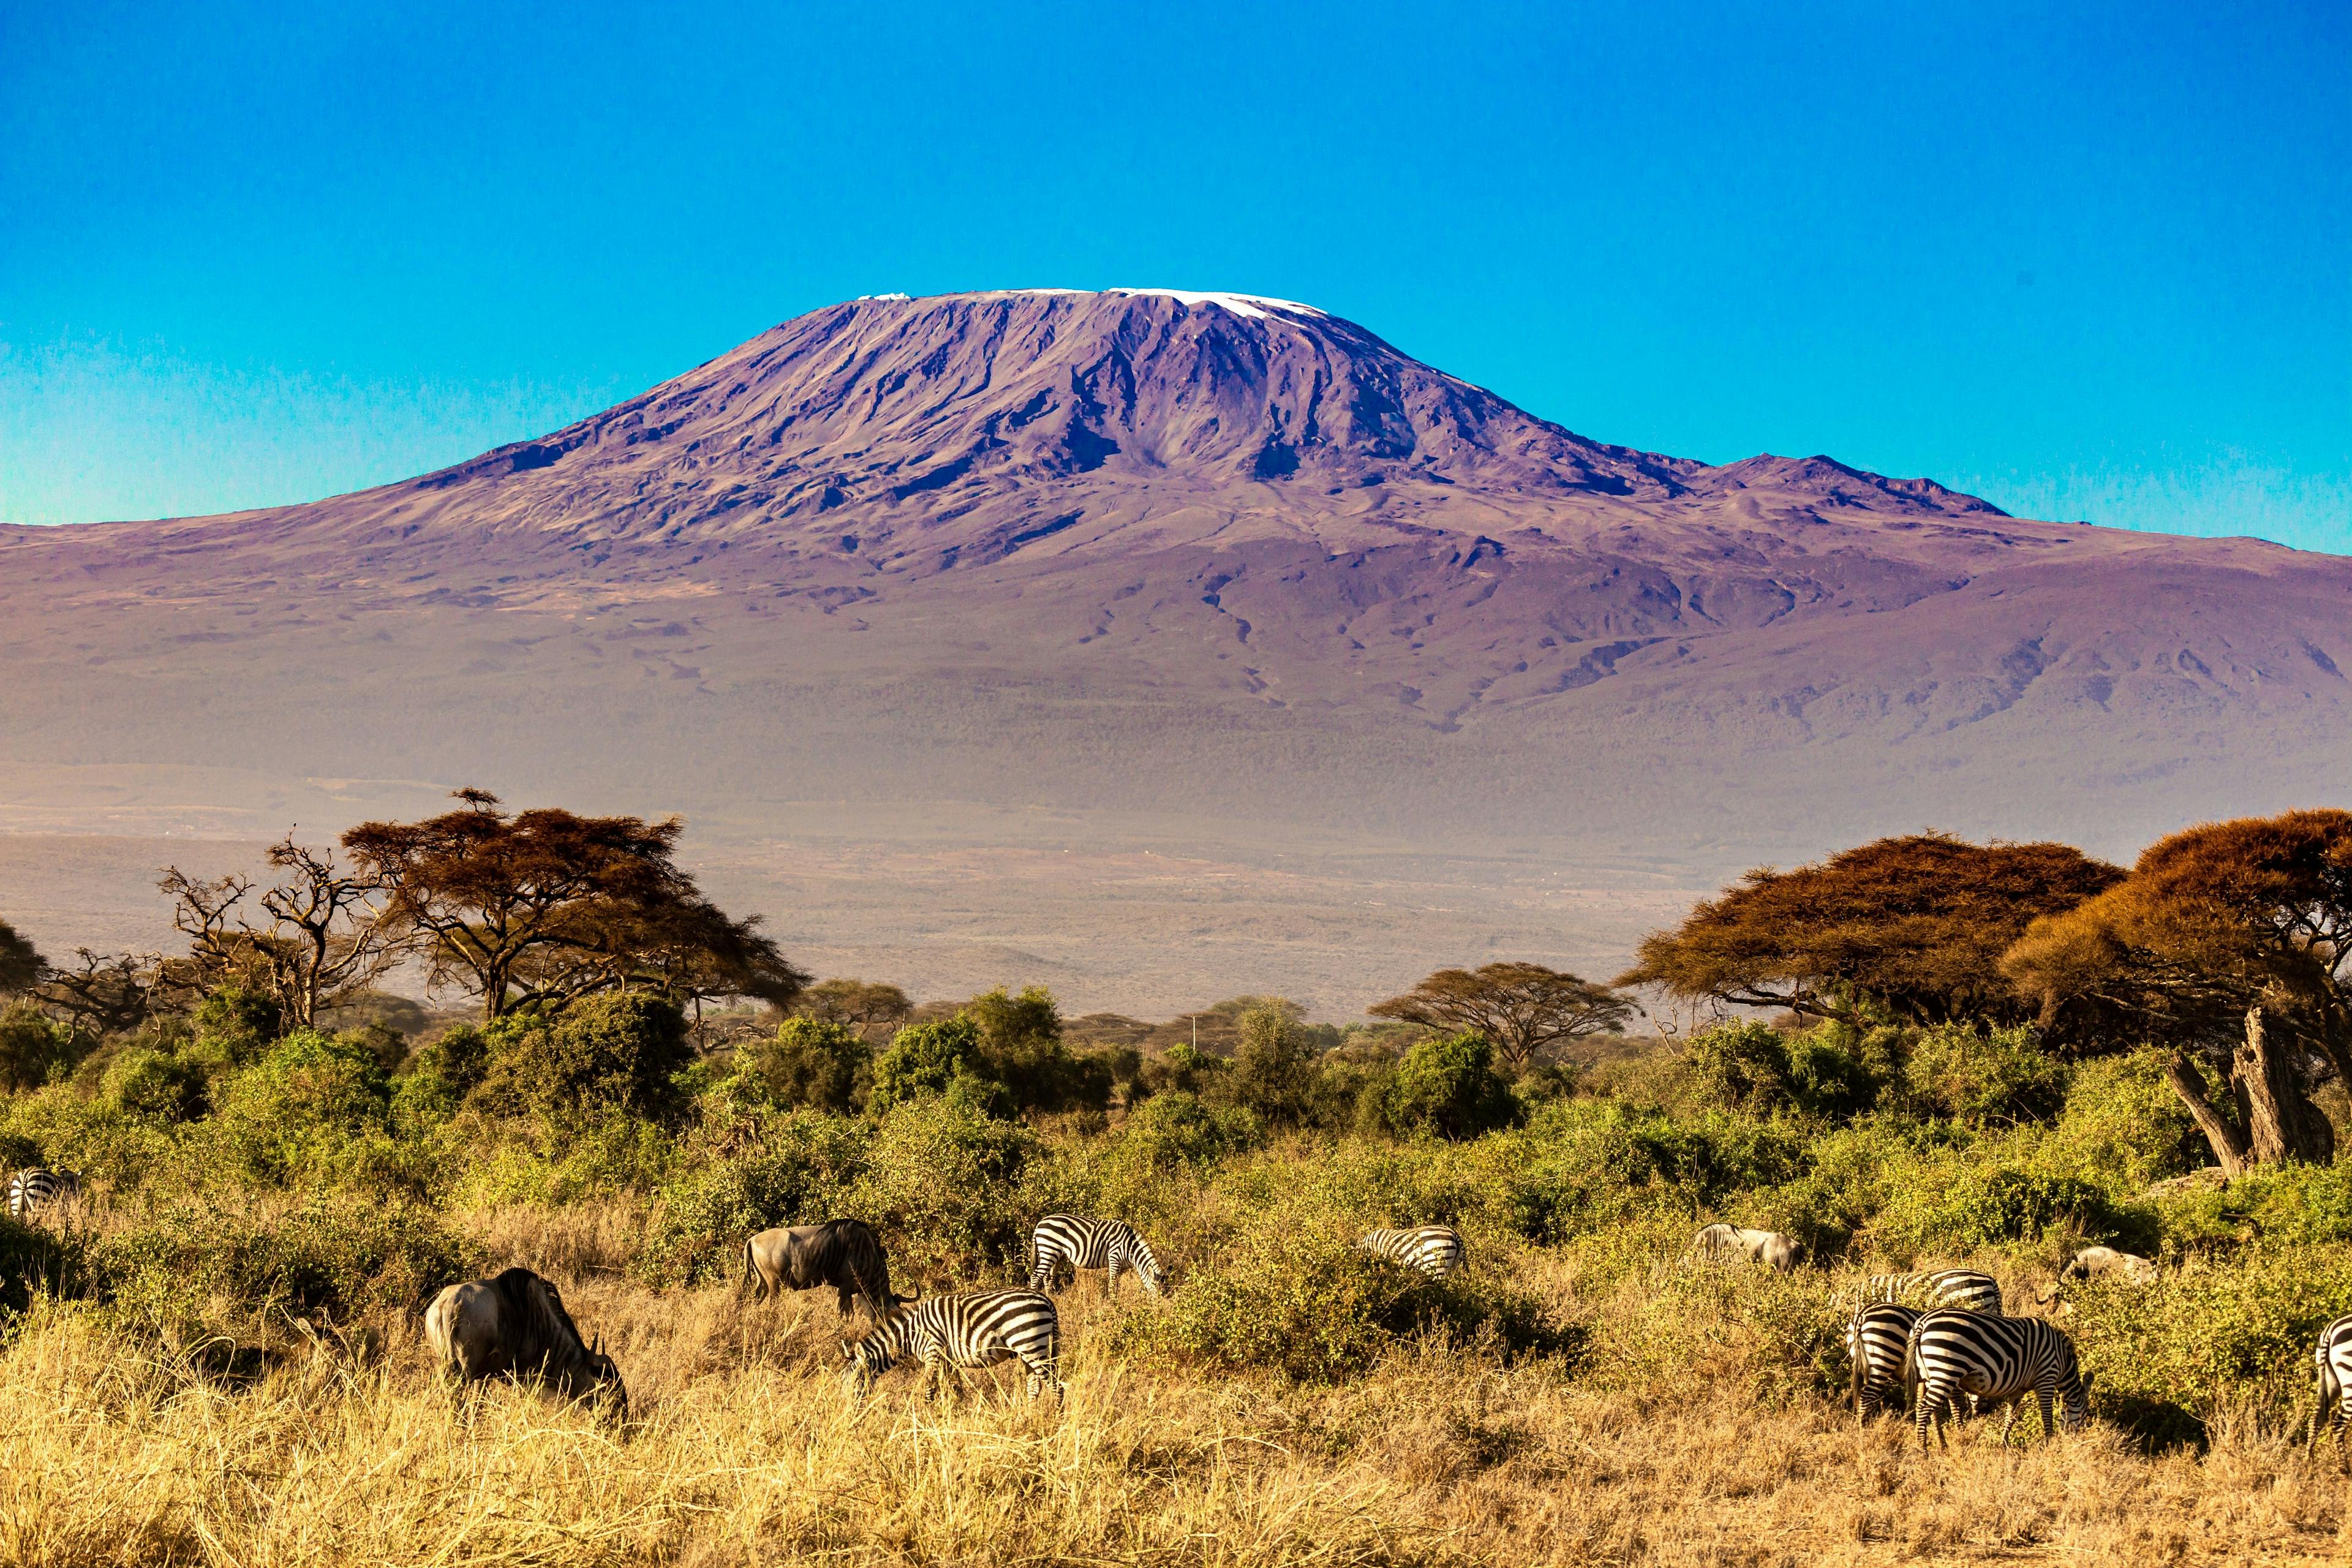 Mount Kilimanjaro in Kenya.